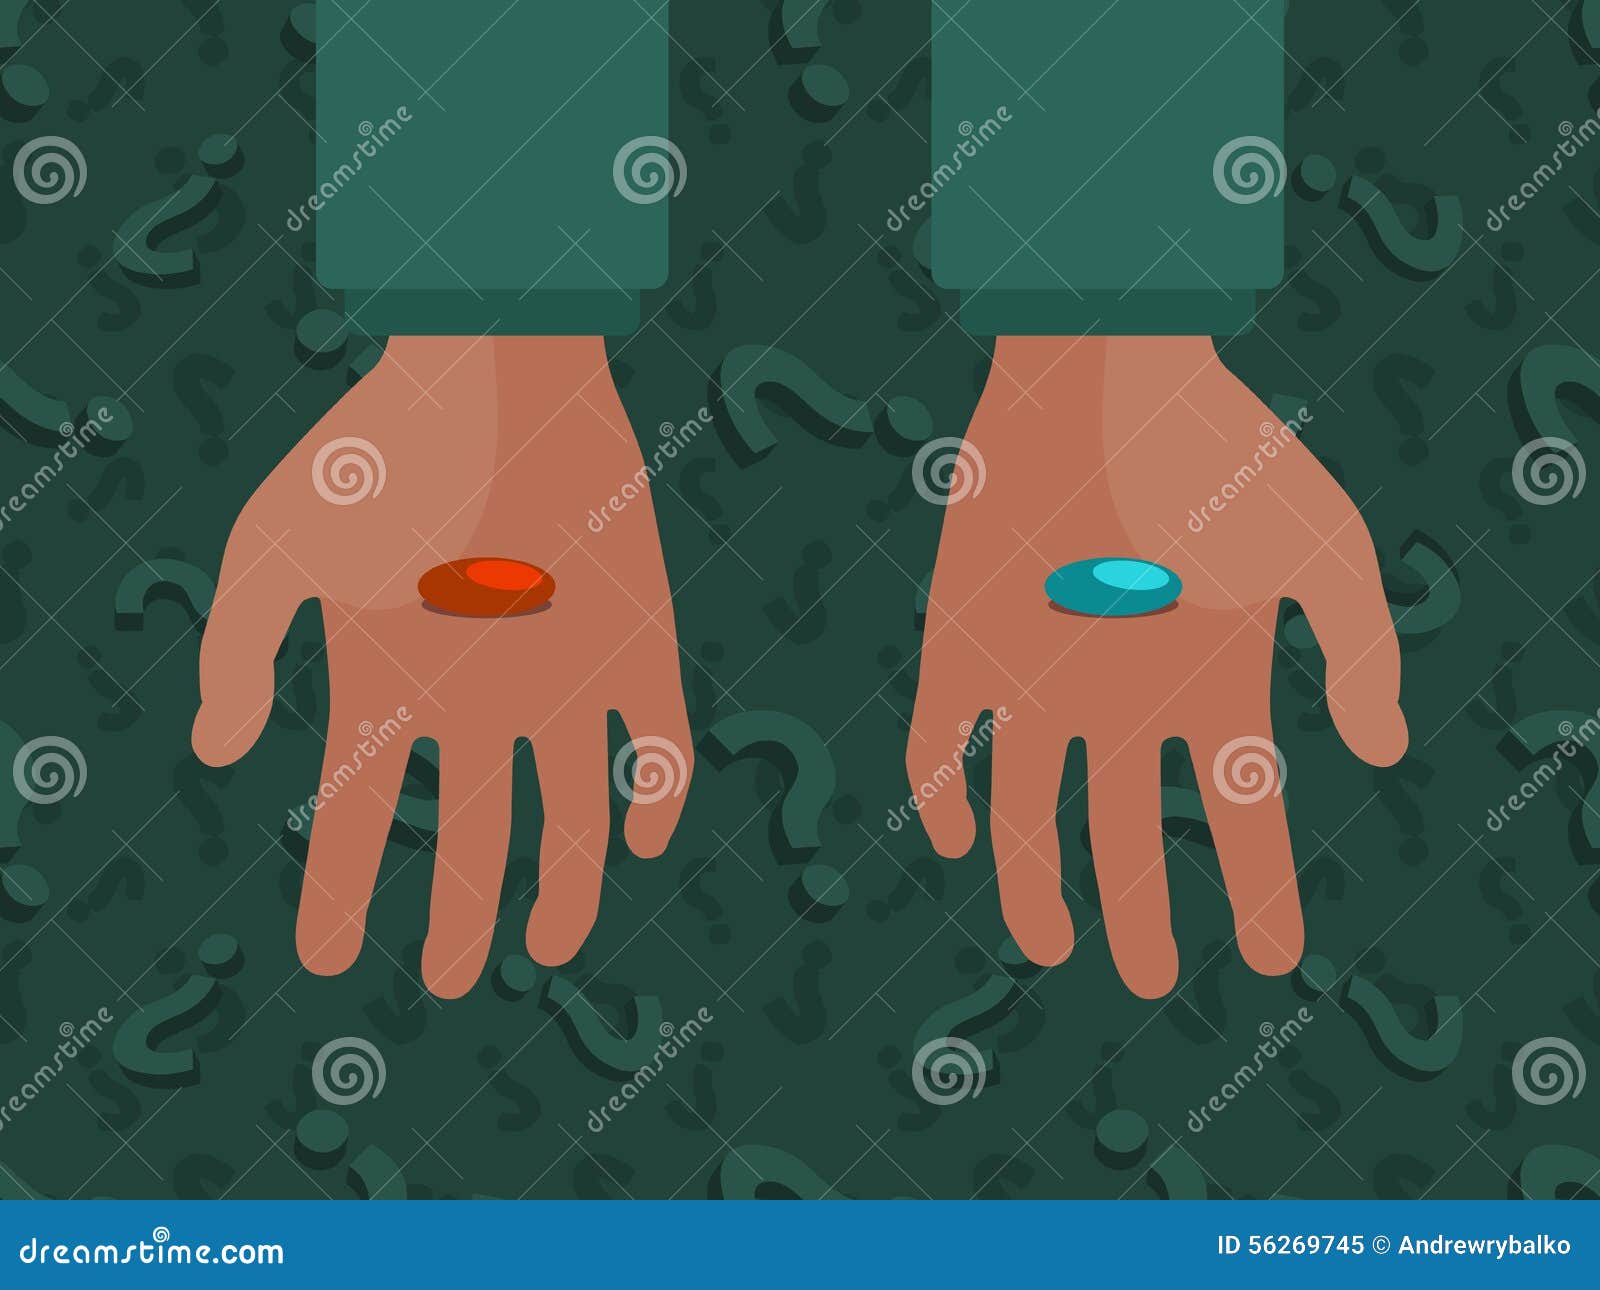 какую таблетку выбрать красную или синюю cyberpunk фото 60